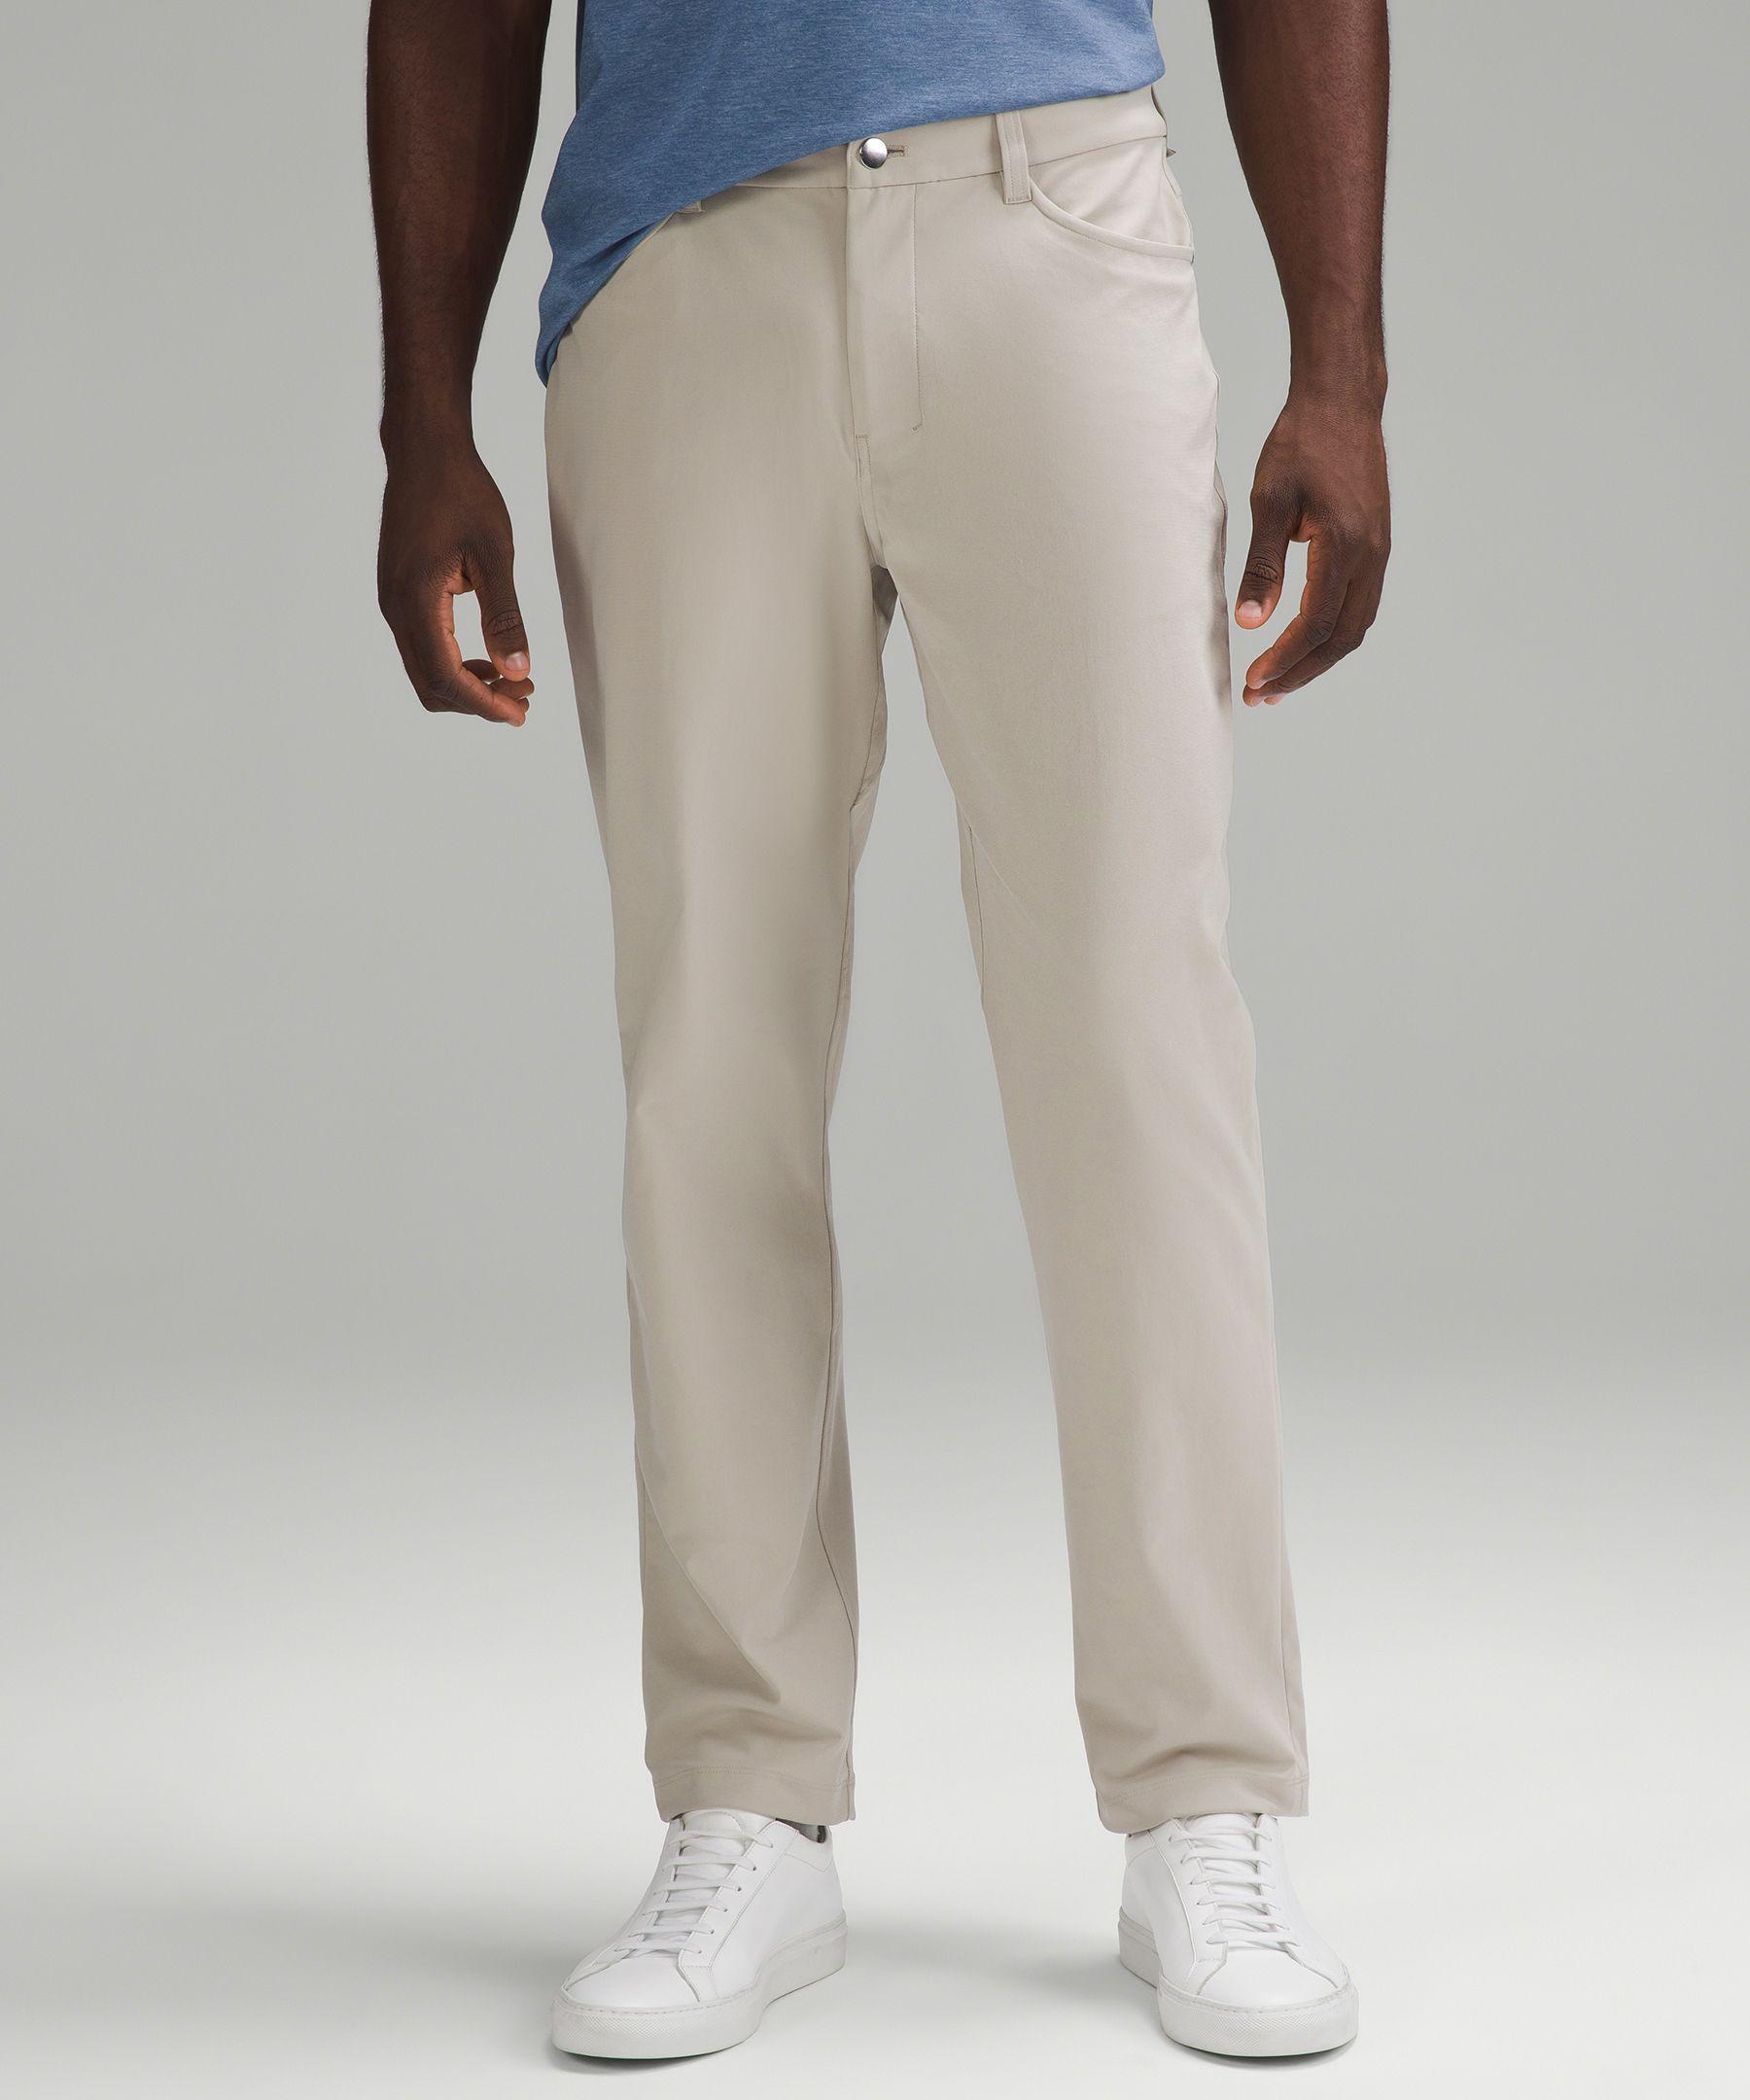 lululemon athletica Abc Classic-fit 5 Pocket Trousers 32l Warpstreme -  Color Khaki - Size 28 for Men